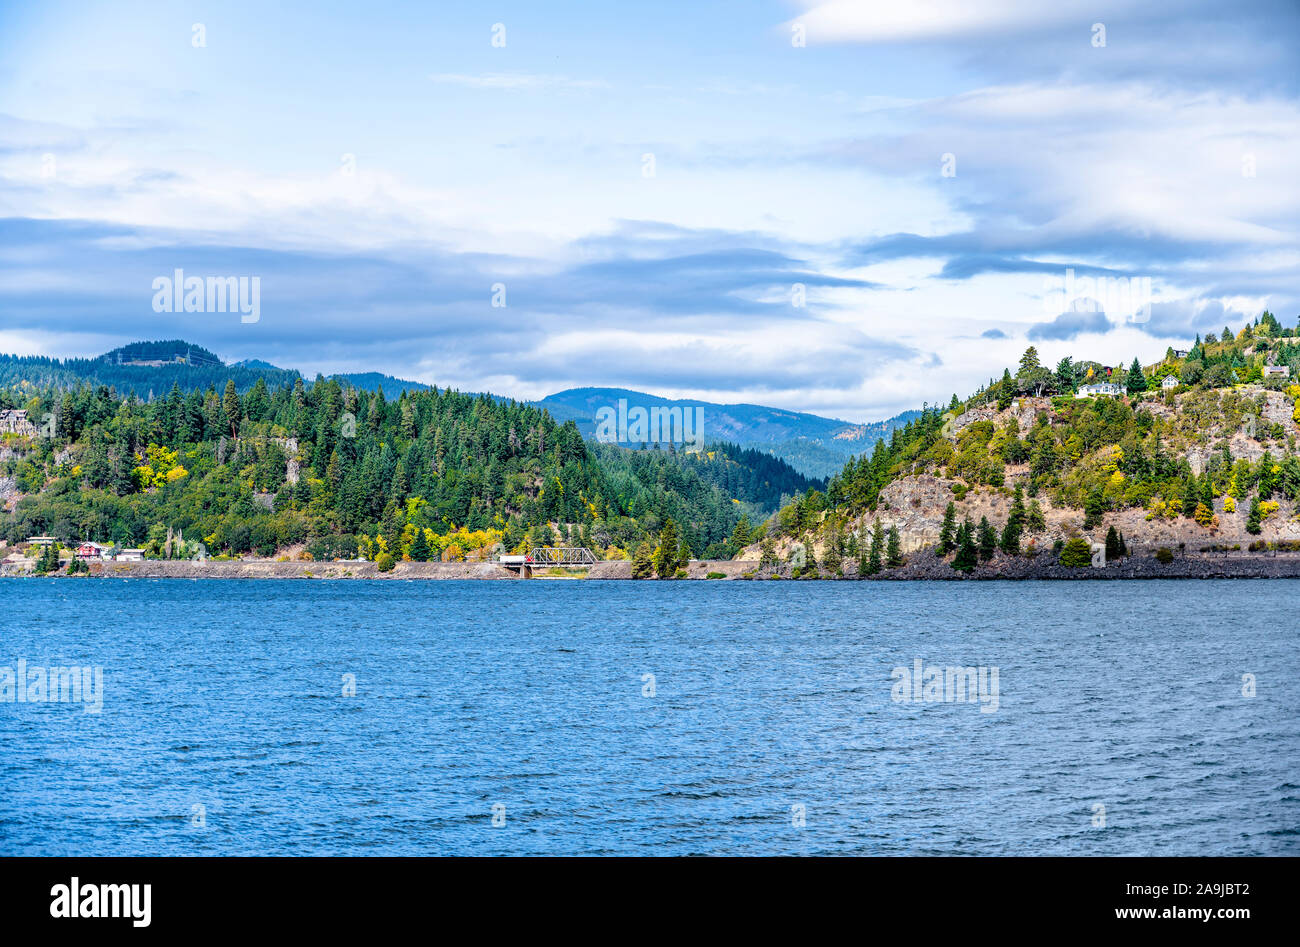 Landschaft der Berge in einem blauen Dunst mit Bäume im Herbst am Fuß und an den Ufern des Columbia River überwachsen versteckt, Durchführung seiner Gewässer entlang Stockfoto